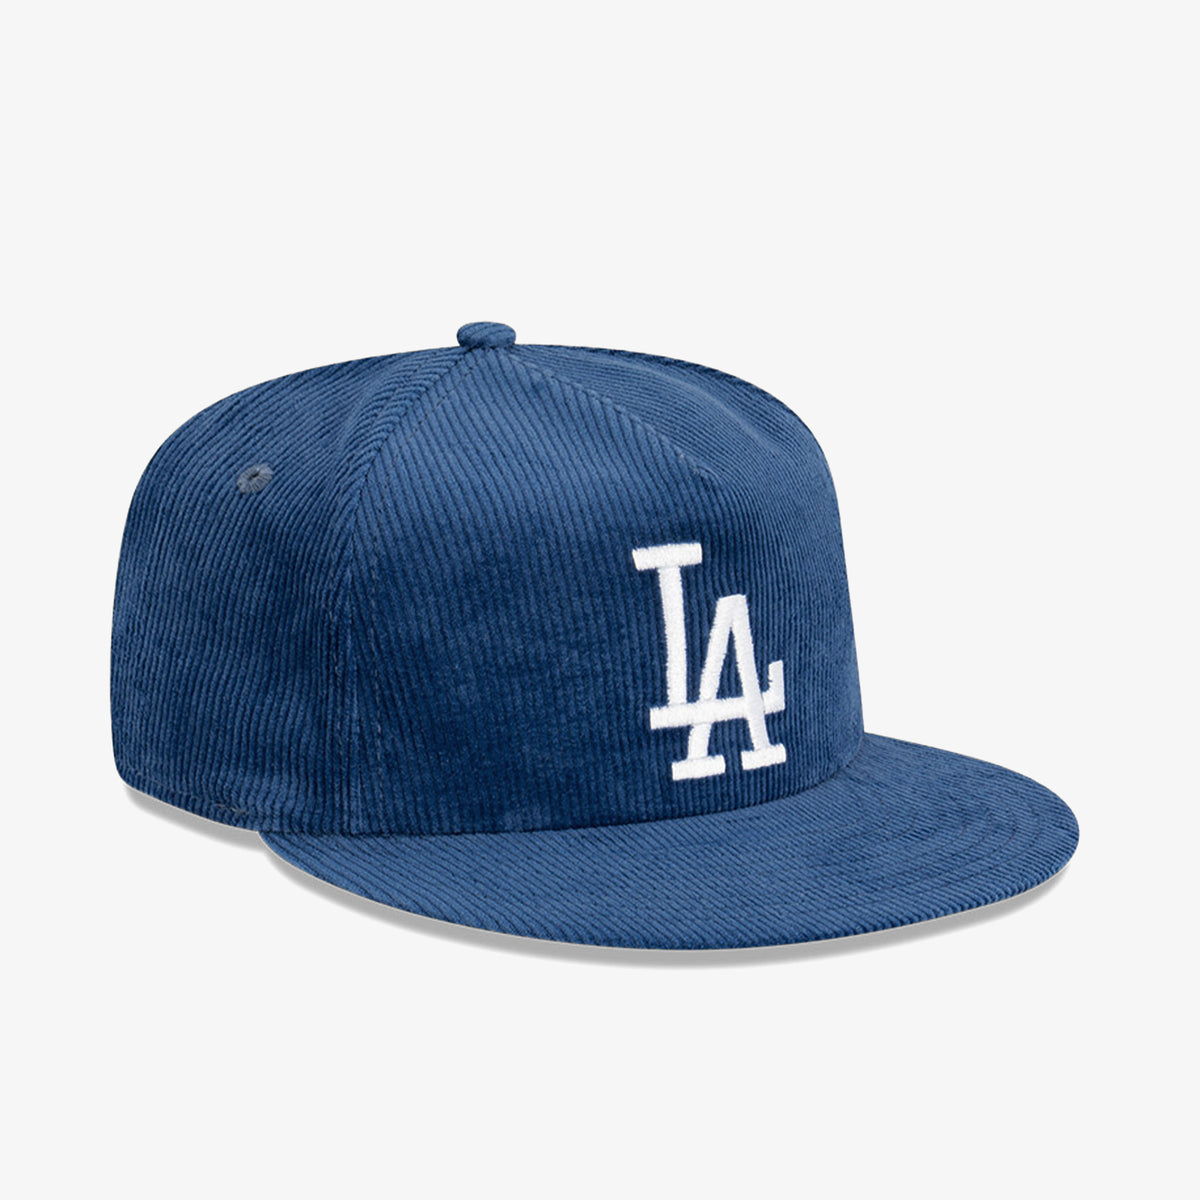 公式+セール/情報 【New Era】LA Dodgers Corduroy Golfer Hat キャップ